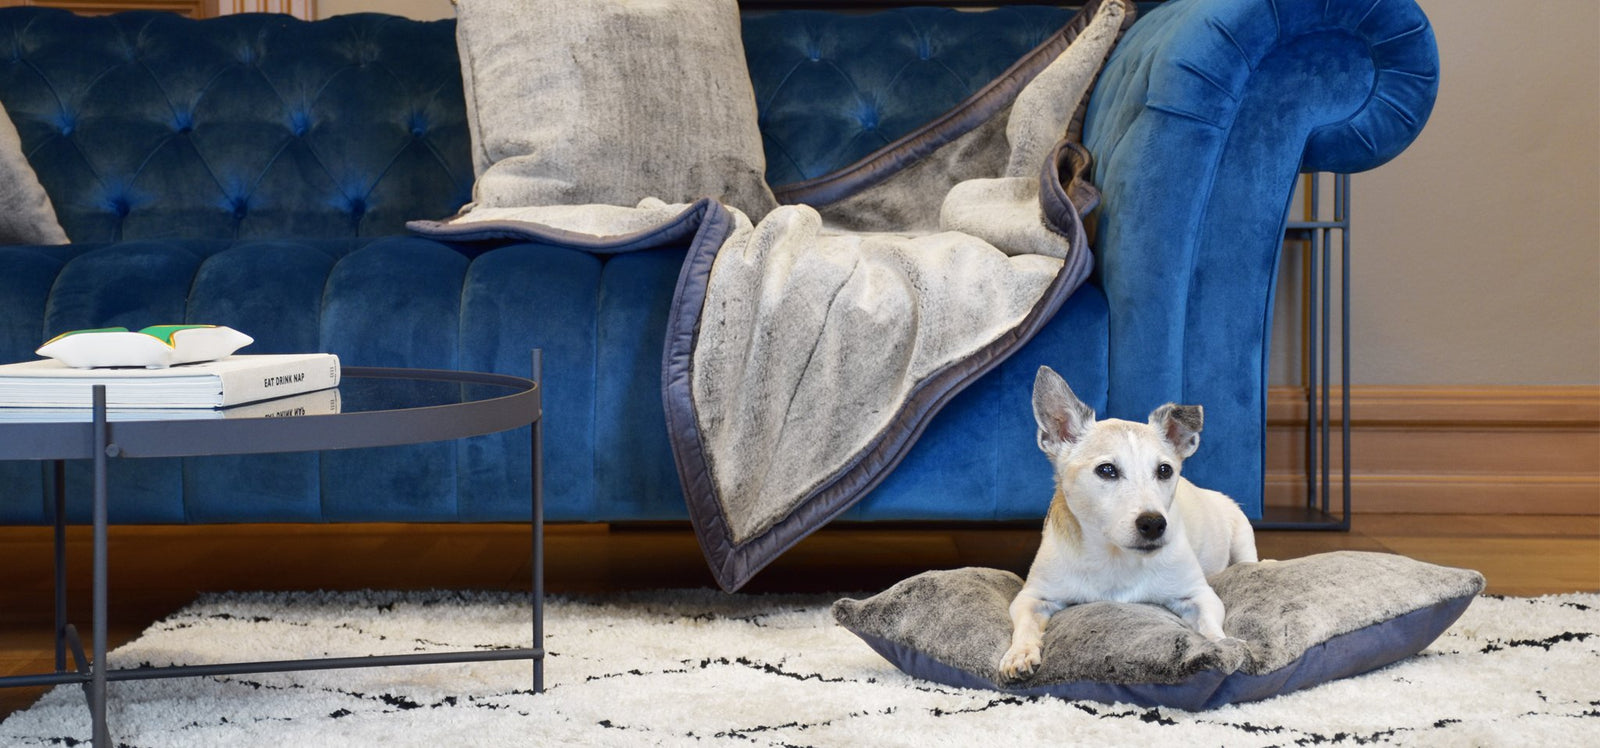 KONA CAVE® - Ihr Hund braucht ein Reisebett für Sicherheit und Komfort